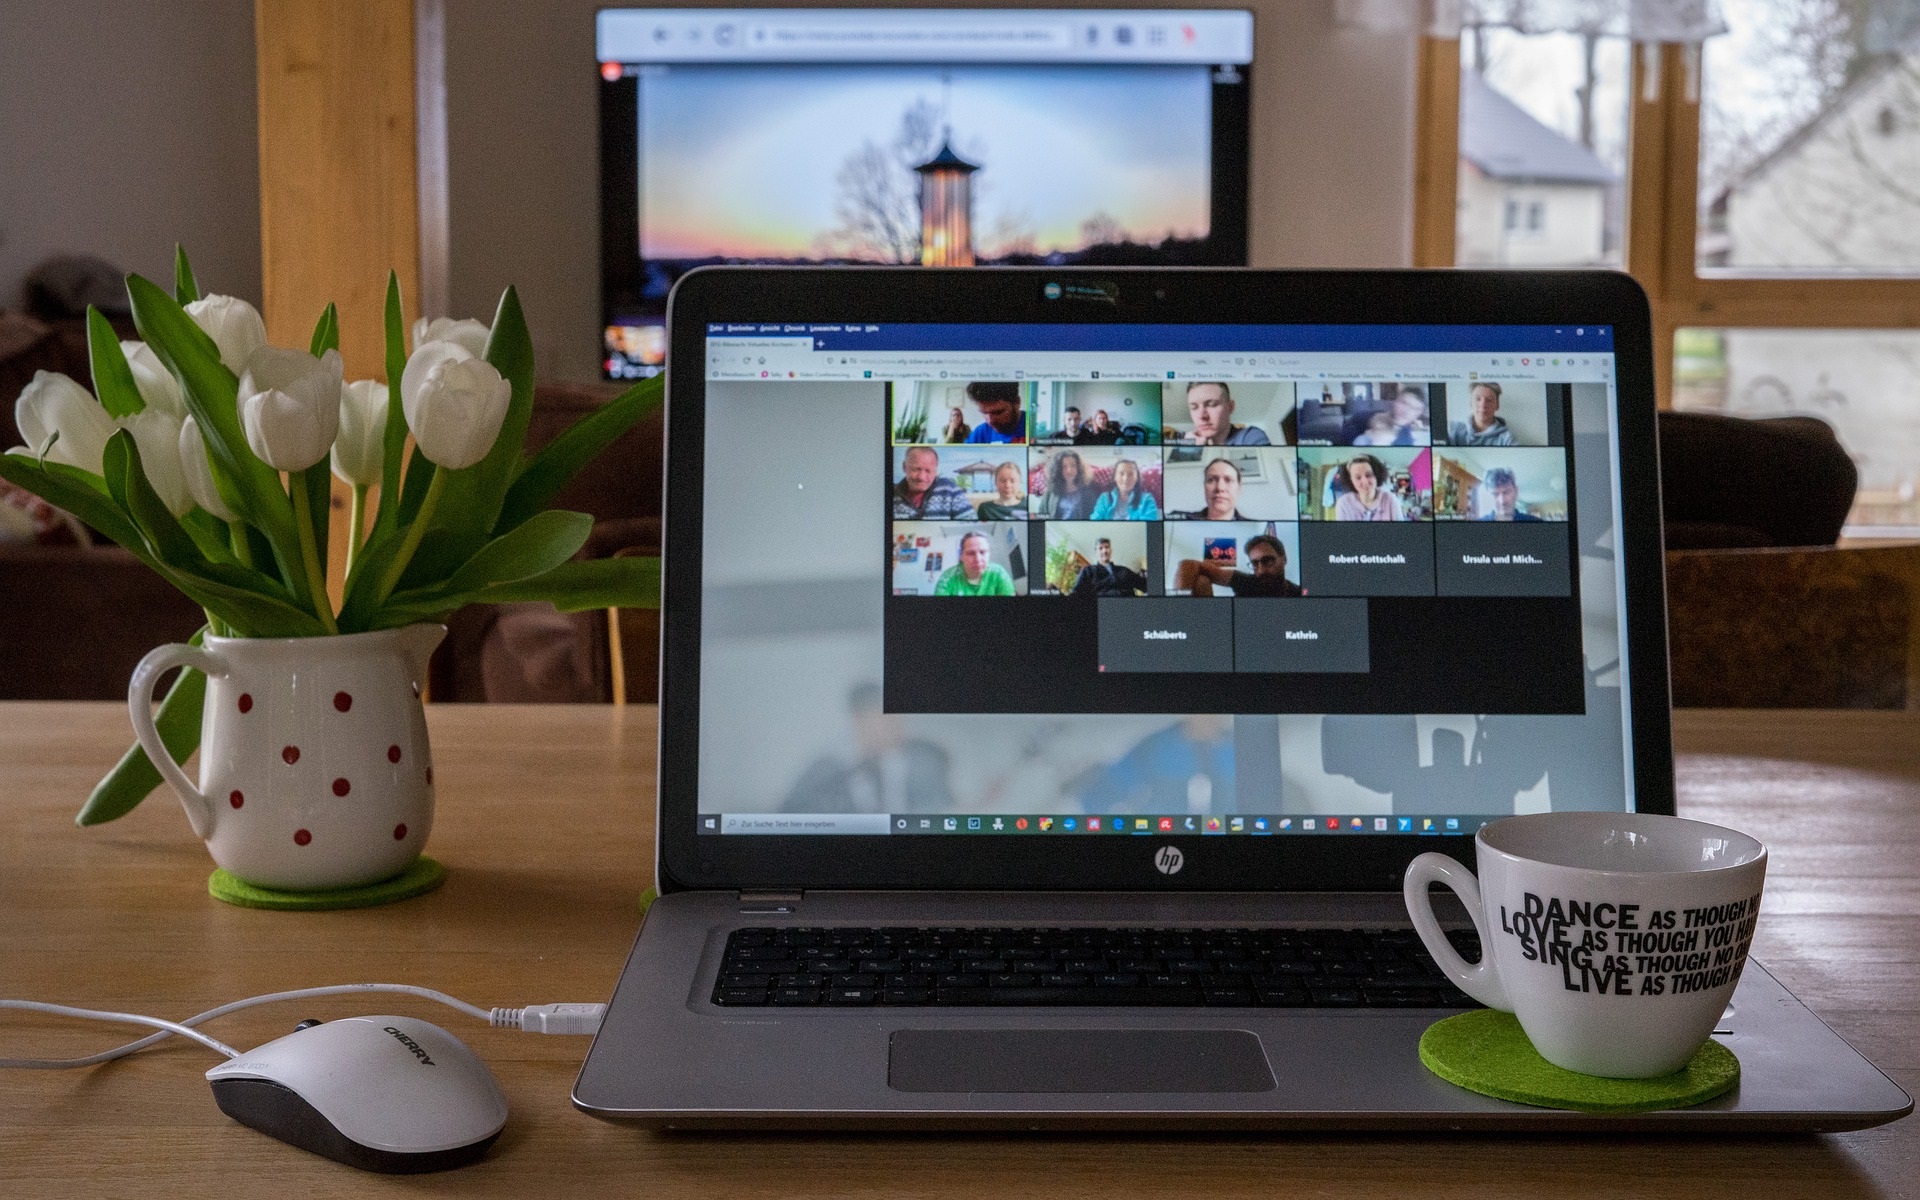 Ein Bild von einem Laptop, auf dem mehrere Personen in einem Online-Meeting sind. Es isnd eineige Personen mit Bild und in einigen Feldern steht ein Name. Rechts neben dem Laptop steht eine weiße Kaffeetasse, links daneben eine Vase mit weißen Tulpen. Links vor dem Laptop ist eine weißen Computermaus.